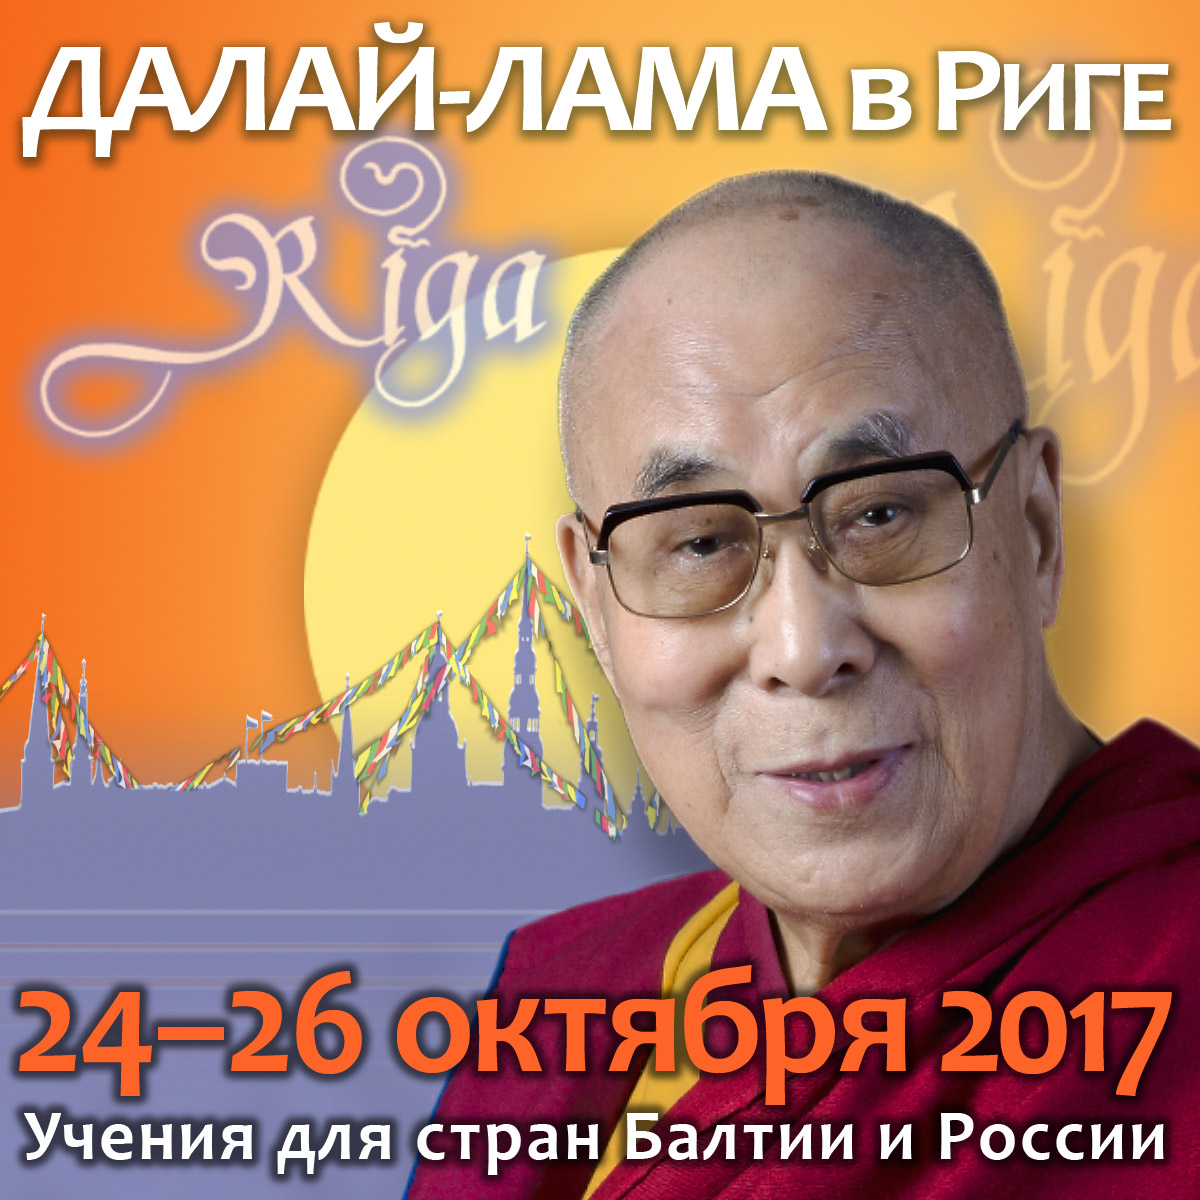 Учения Его Святейшества Далай-ламы в Риге. Запись прямой трансляции